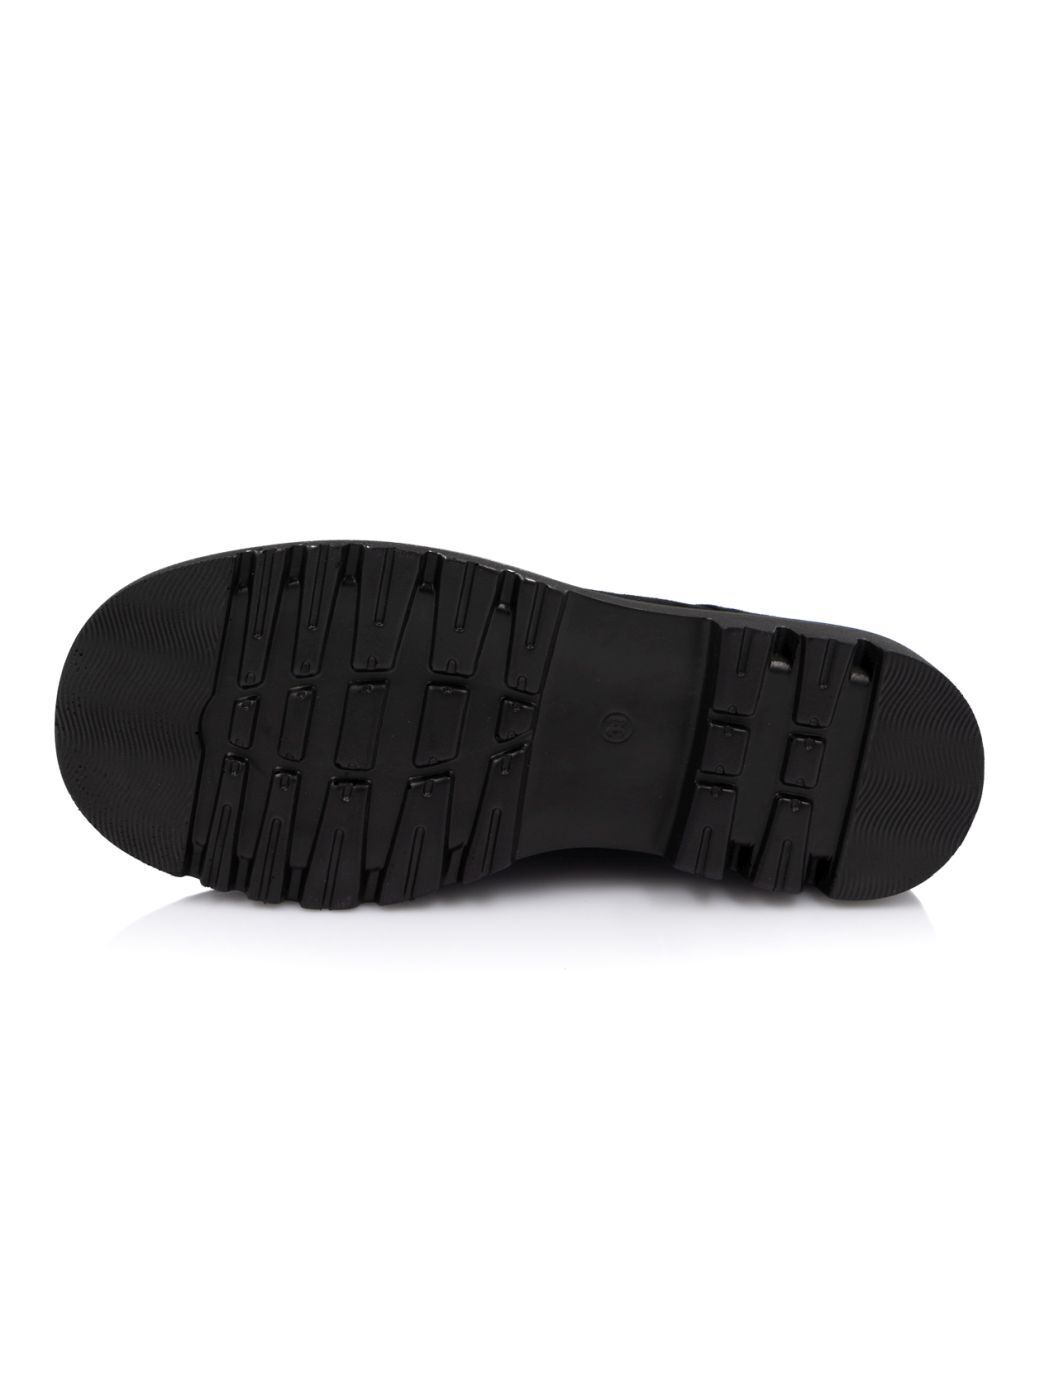 Туфли Oxfords женские черные экозамша демисезон от производителя 5M вид 2